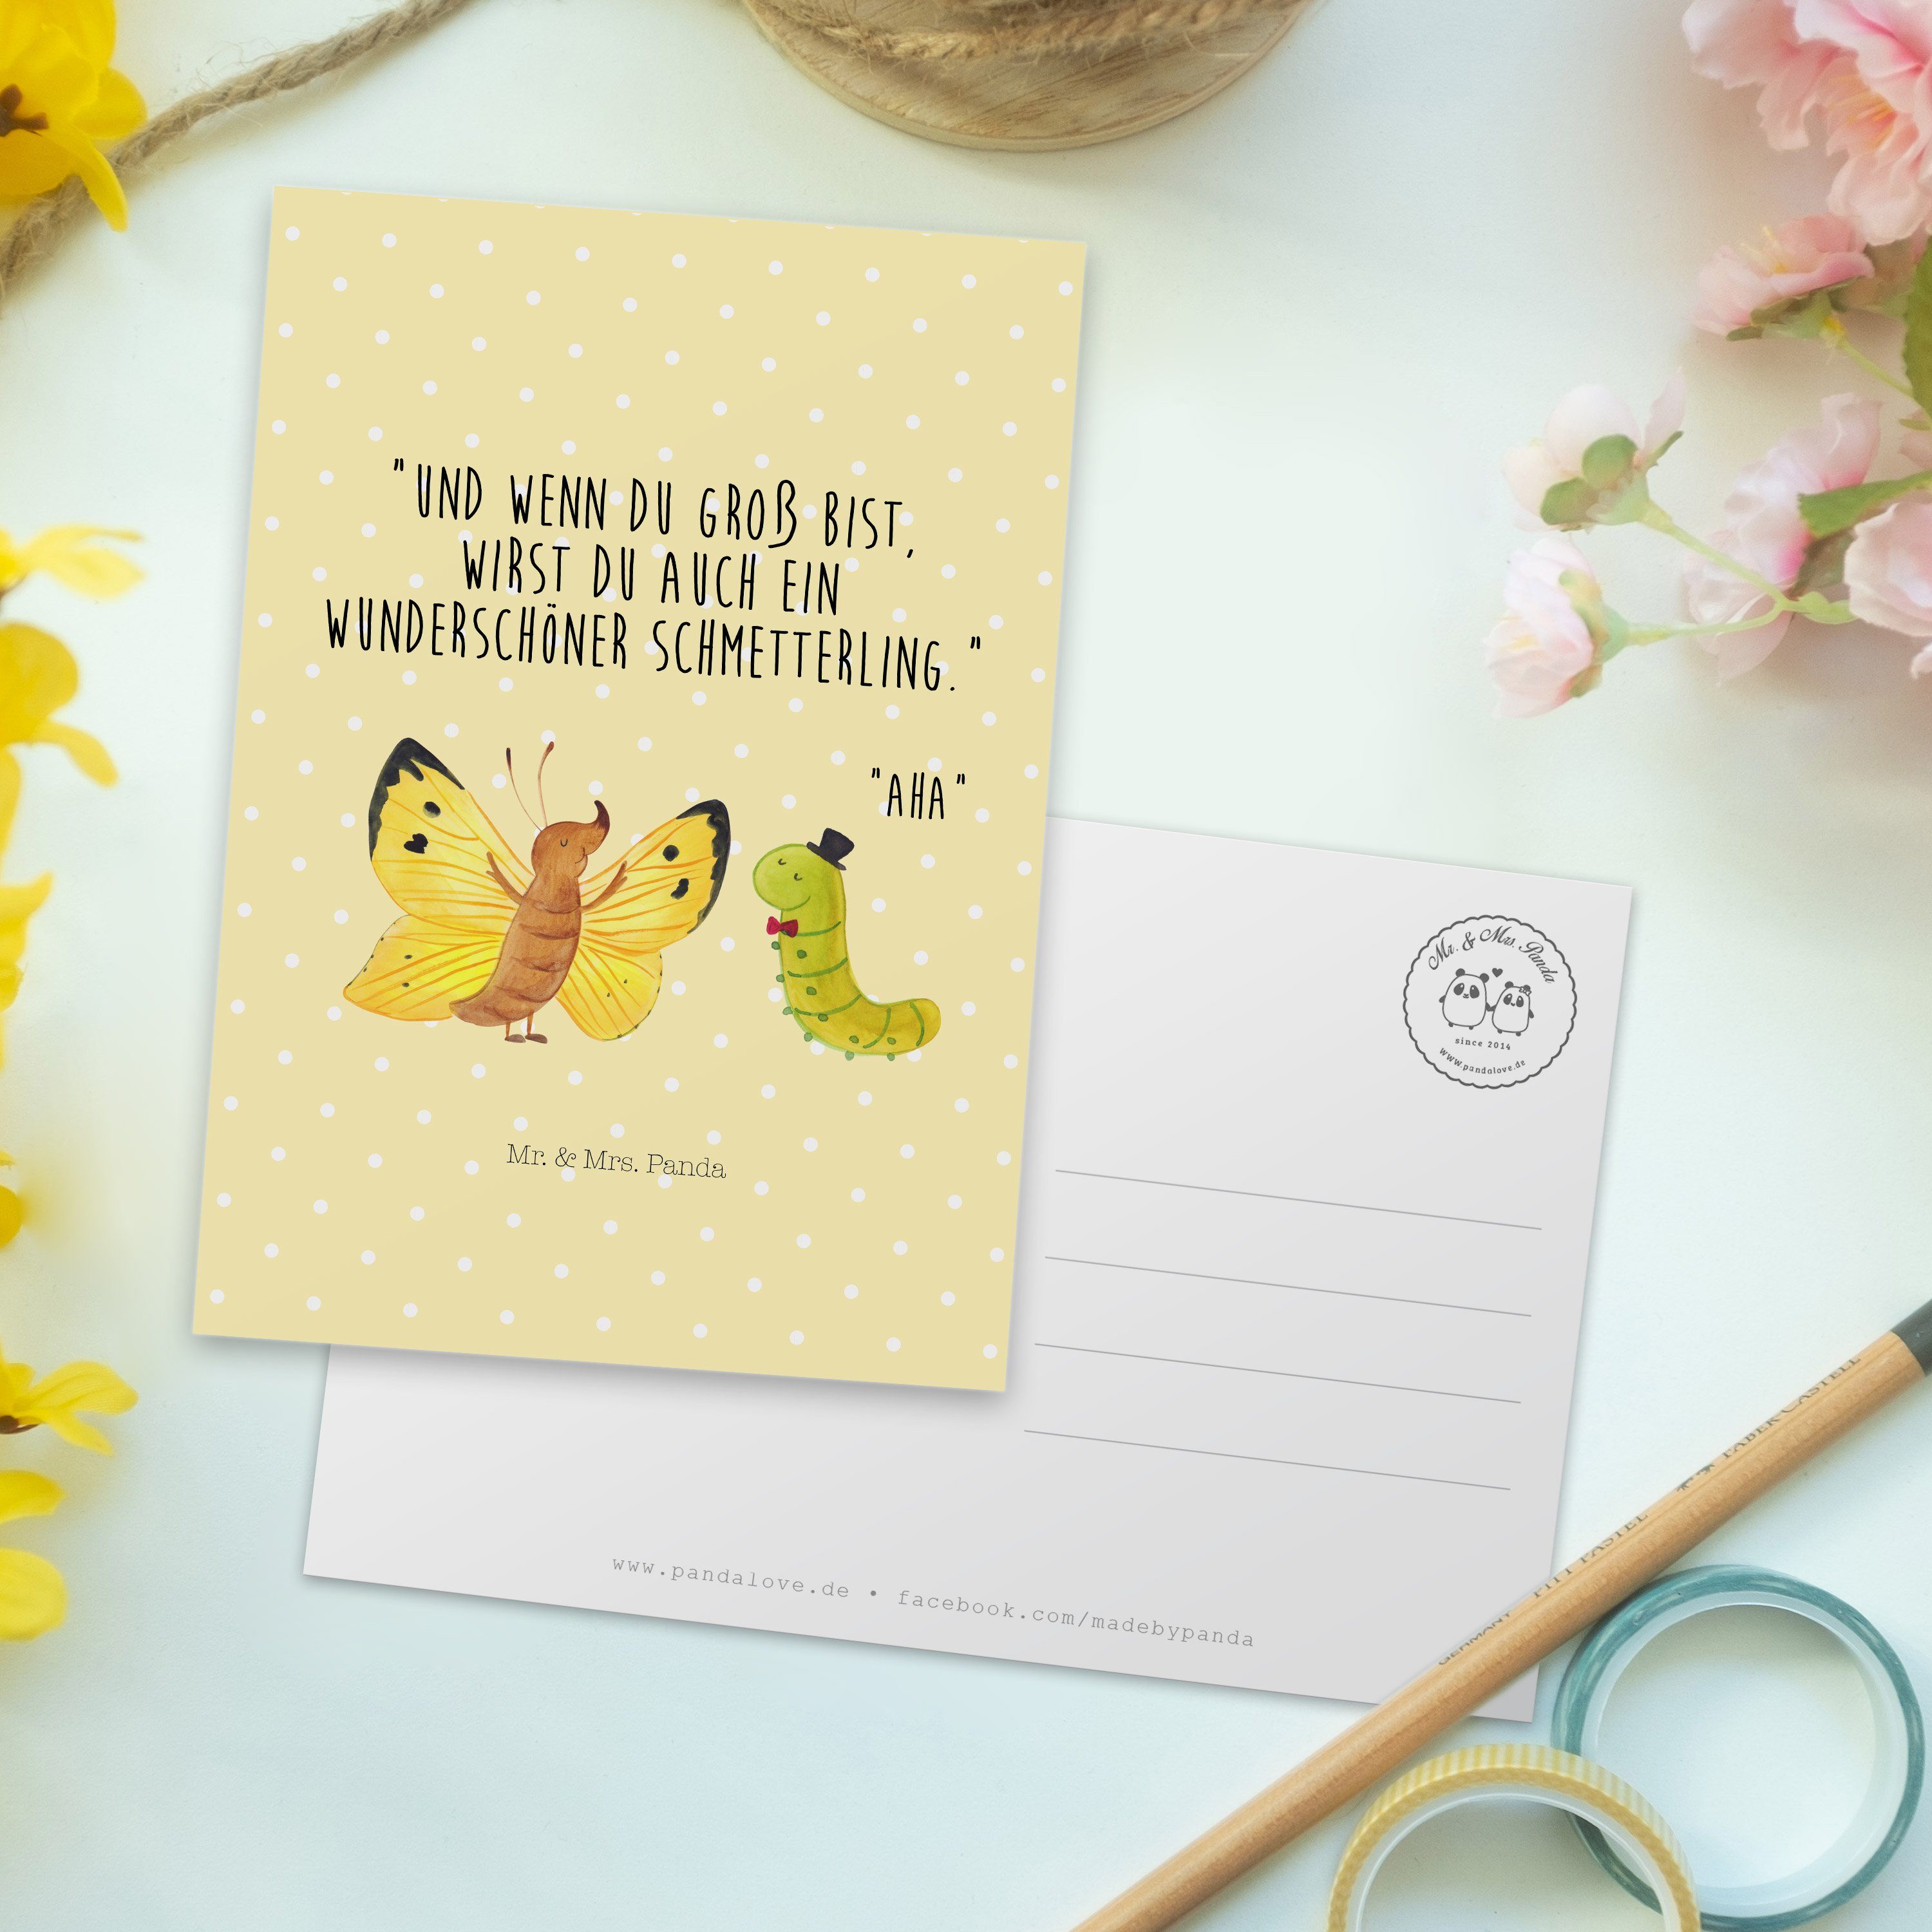 Mr. & Postkarte & Gelb Schmetterling Mrs. Panda Raupe - Erwachsen Geschenk, Pastell - Einladung